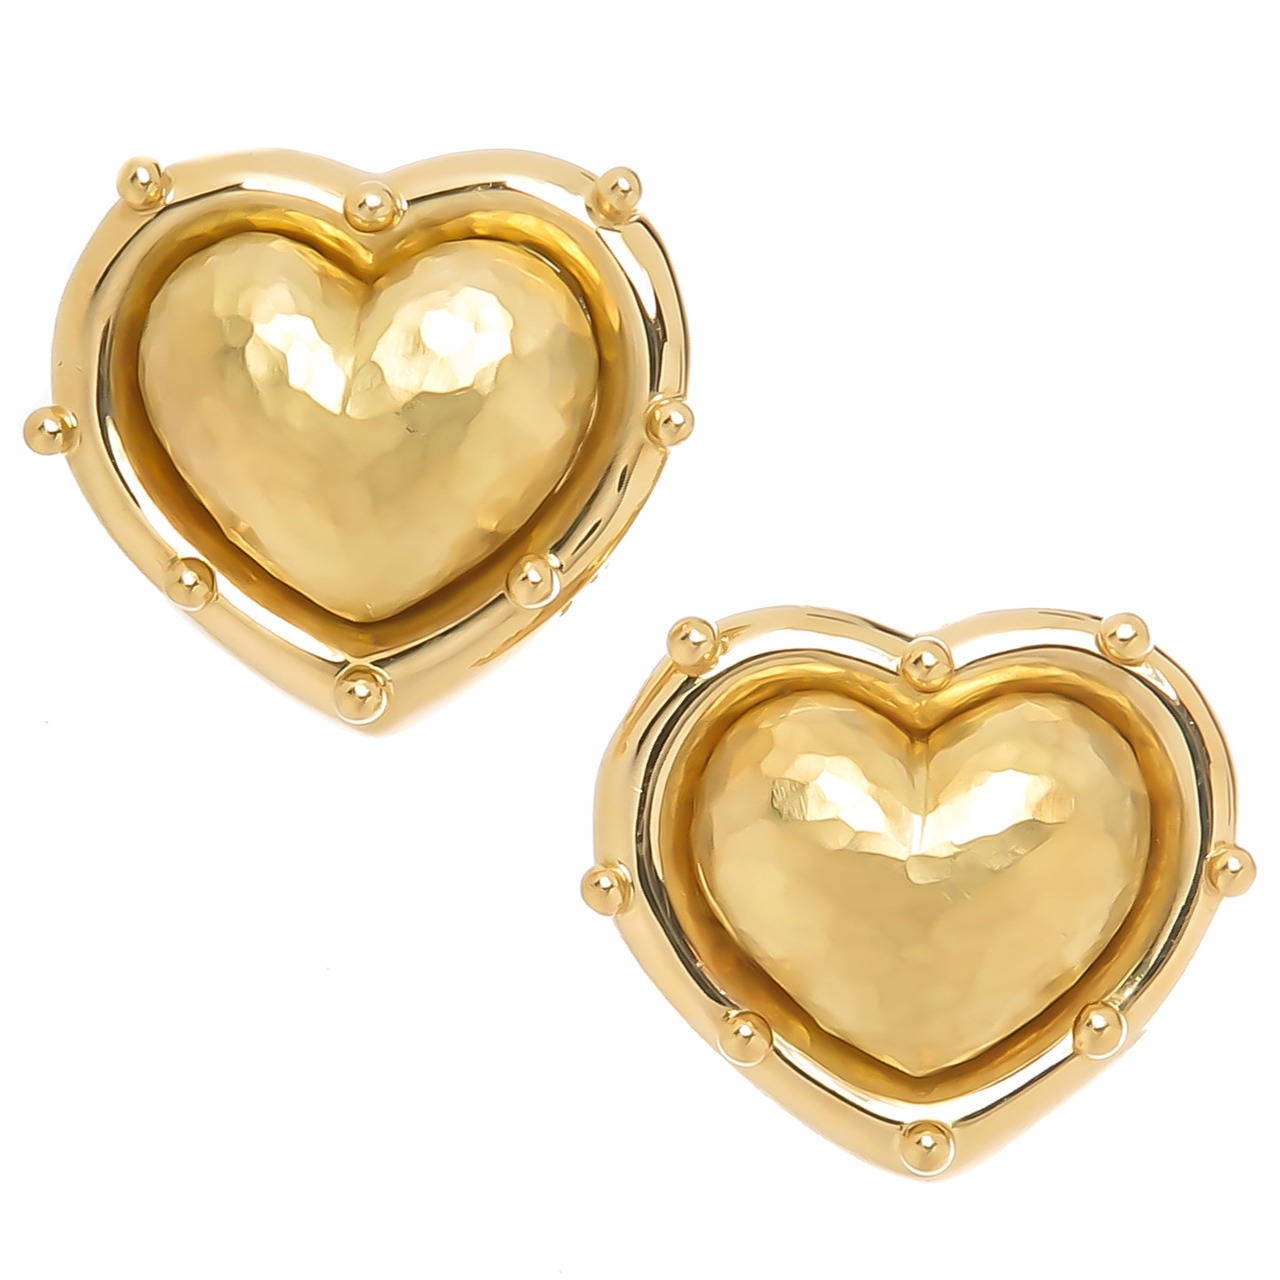 Tiffany & Co. Paloma Picasso Gold Heart Ear Clips